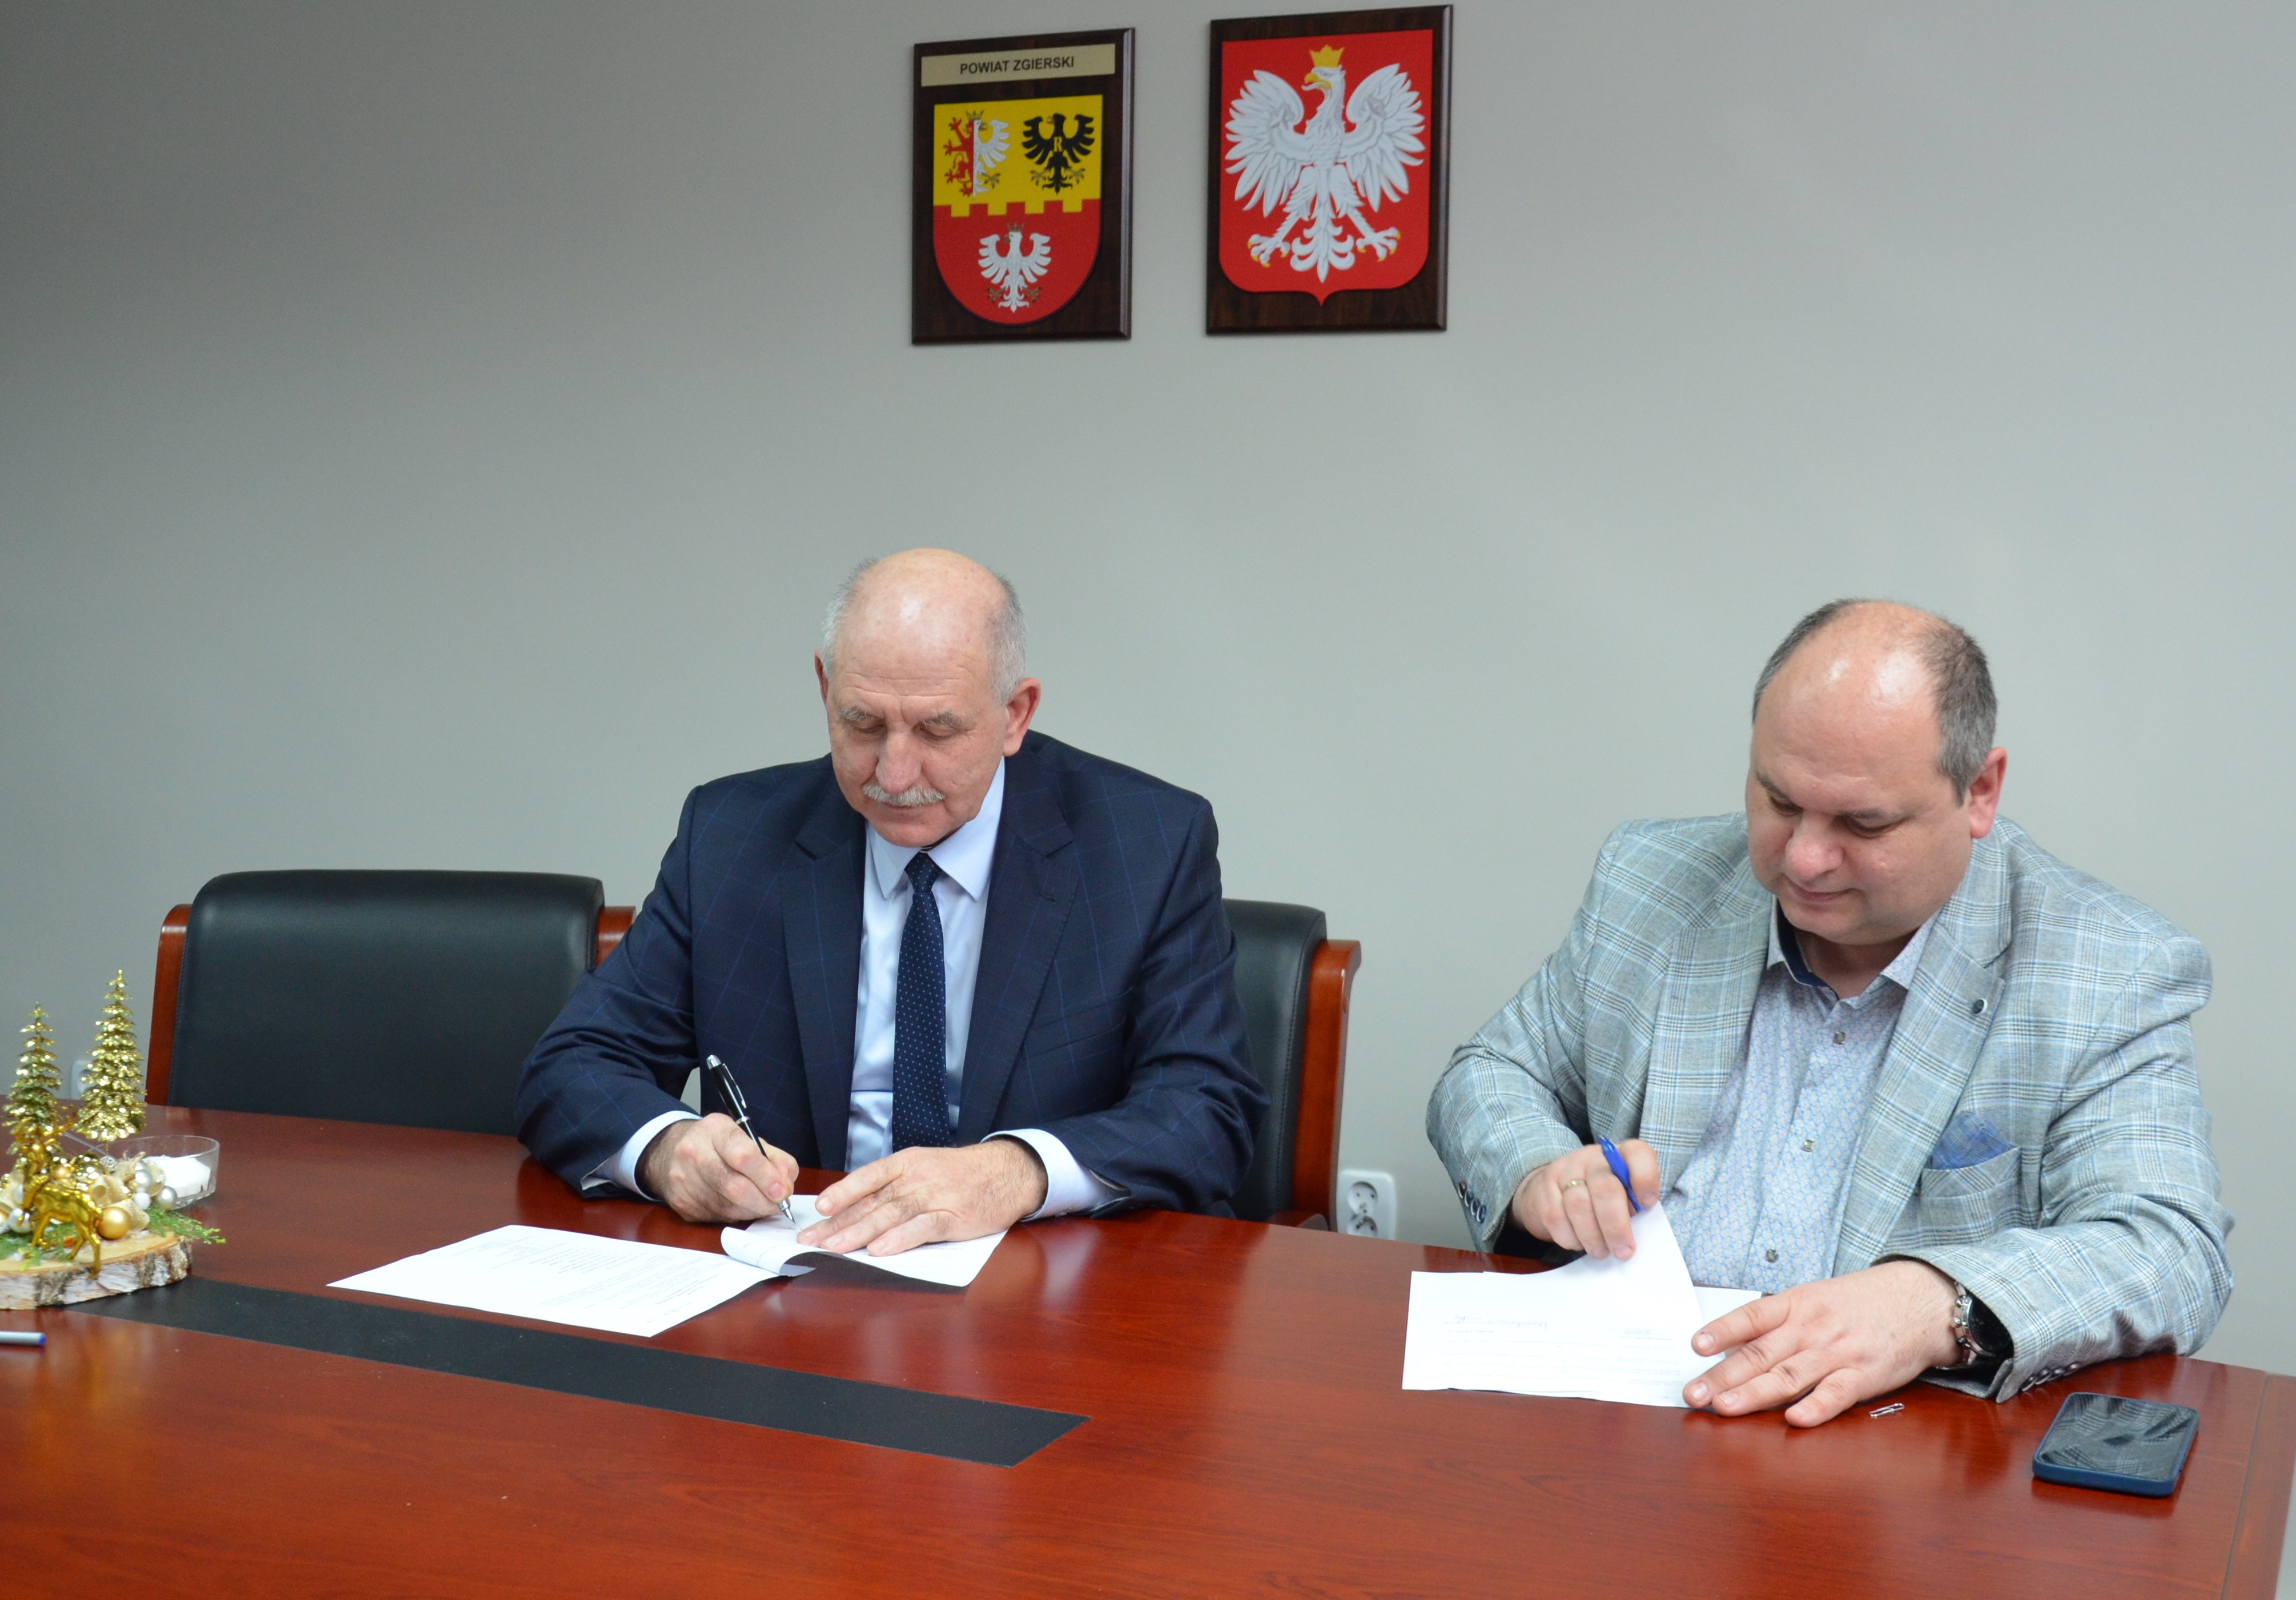 Podpisanie dokumentów przez Starostę Zgierskiego i dyrektora szkoły. 